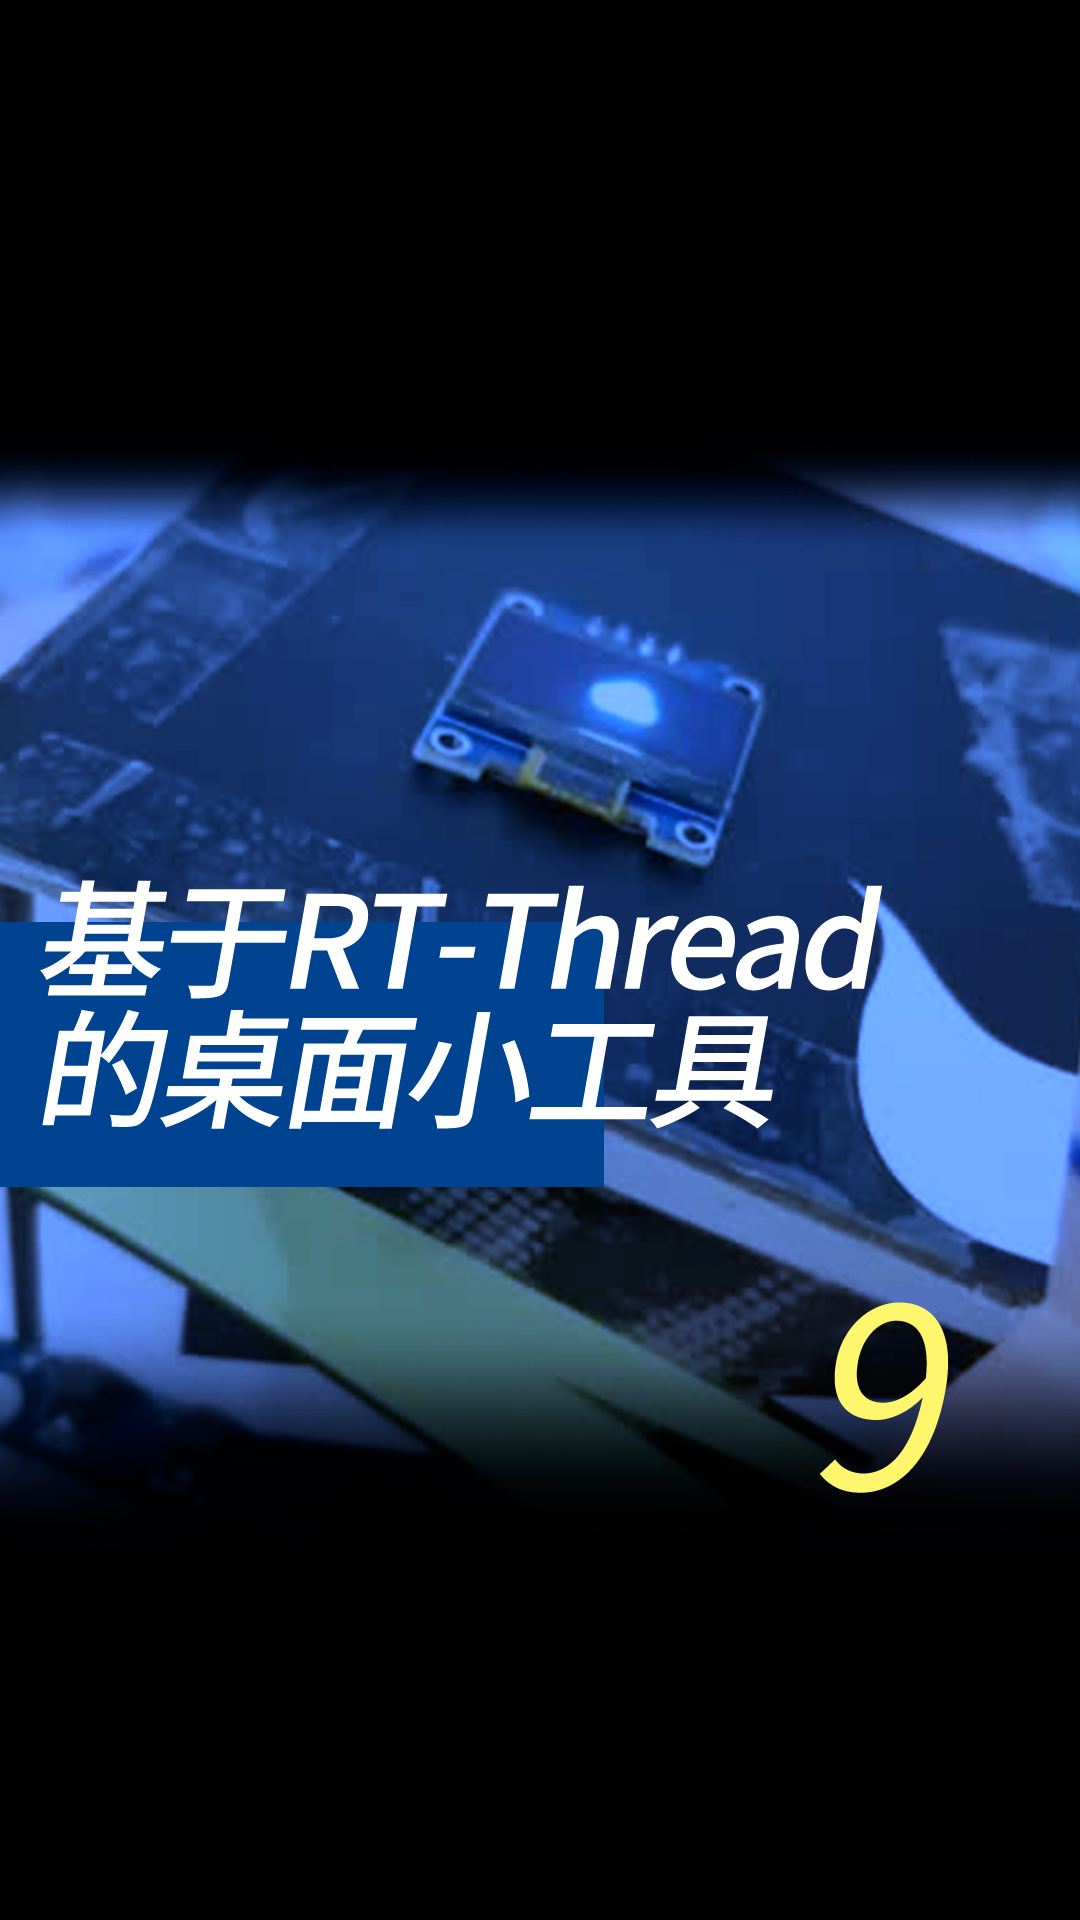 基于RT-Thread的桌面小工具 - 9-3-4ntp